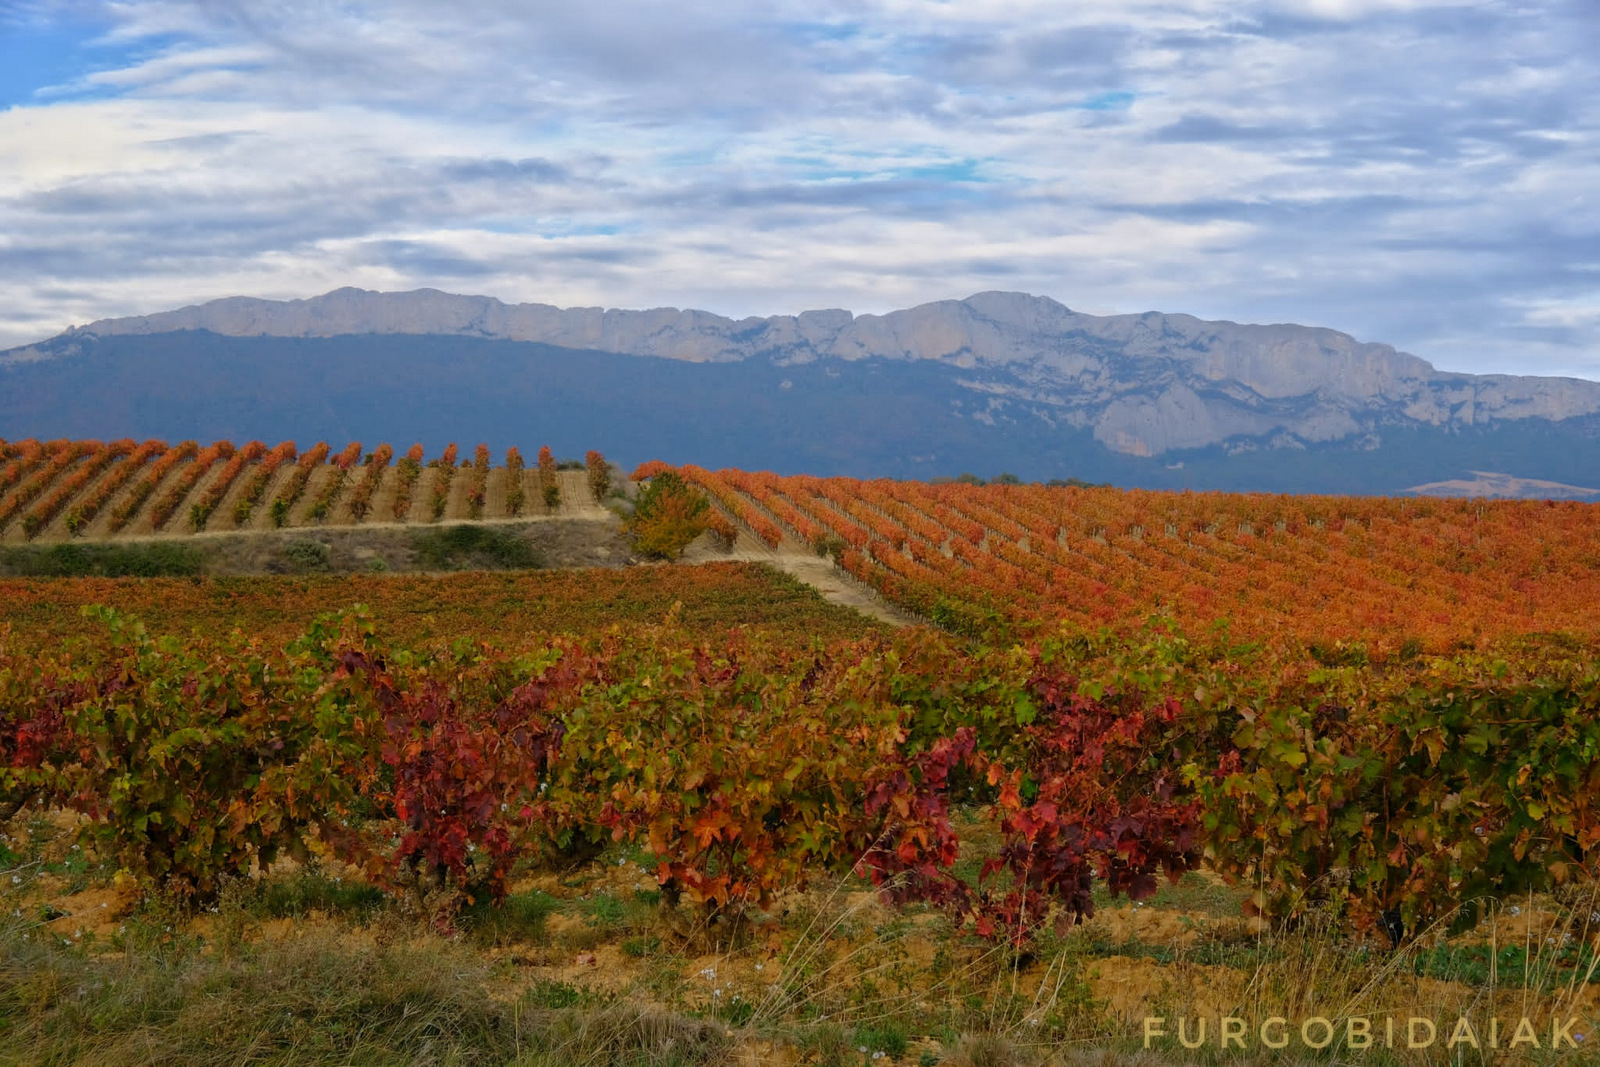 Campos de viñas, La Rioja Alavesa, Sierra de Toloño